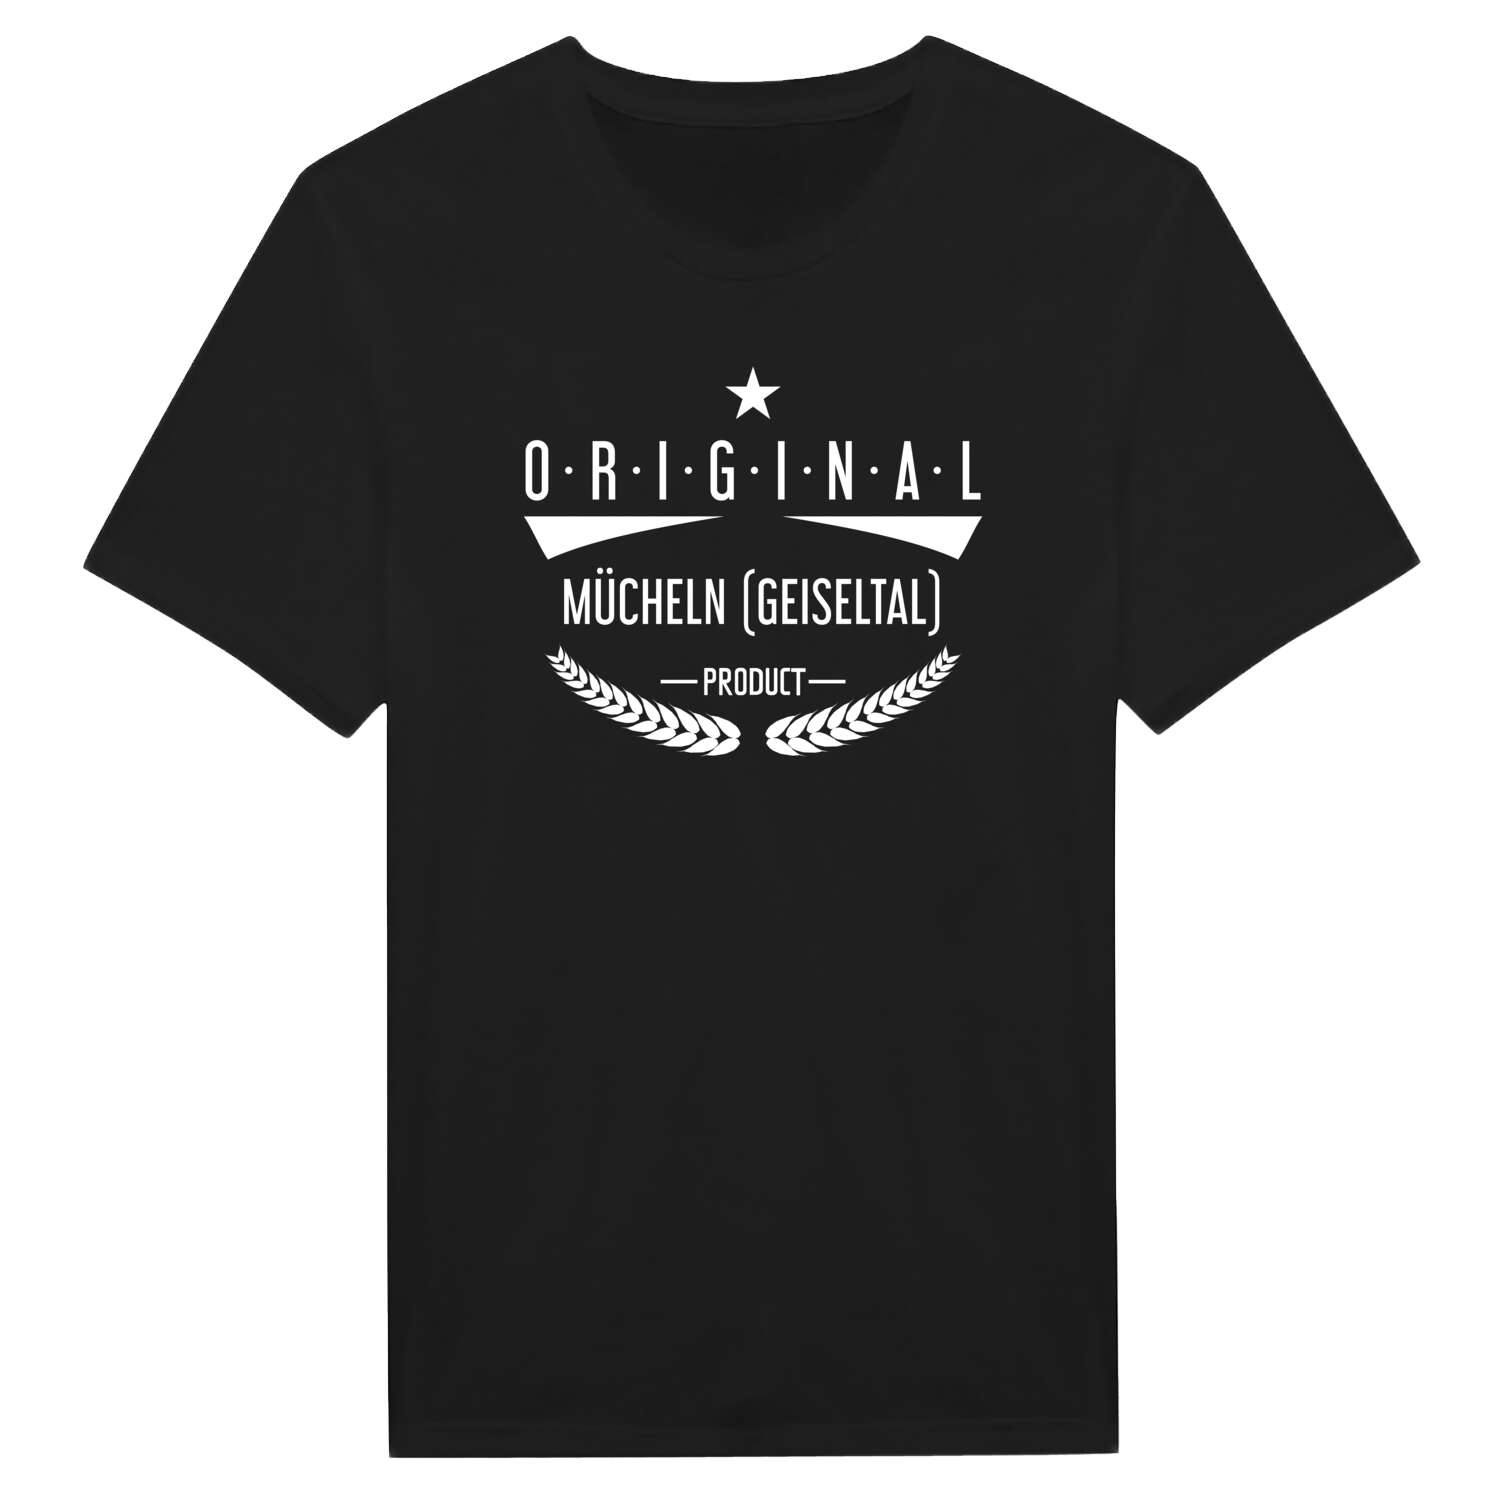 Mücheln (Geiseltal) T-Shirt »Original Product«